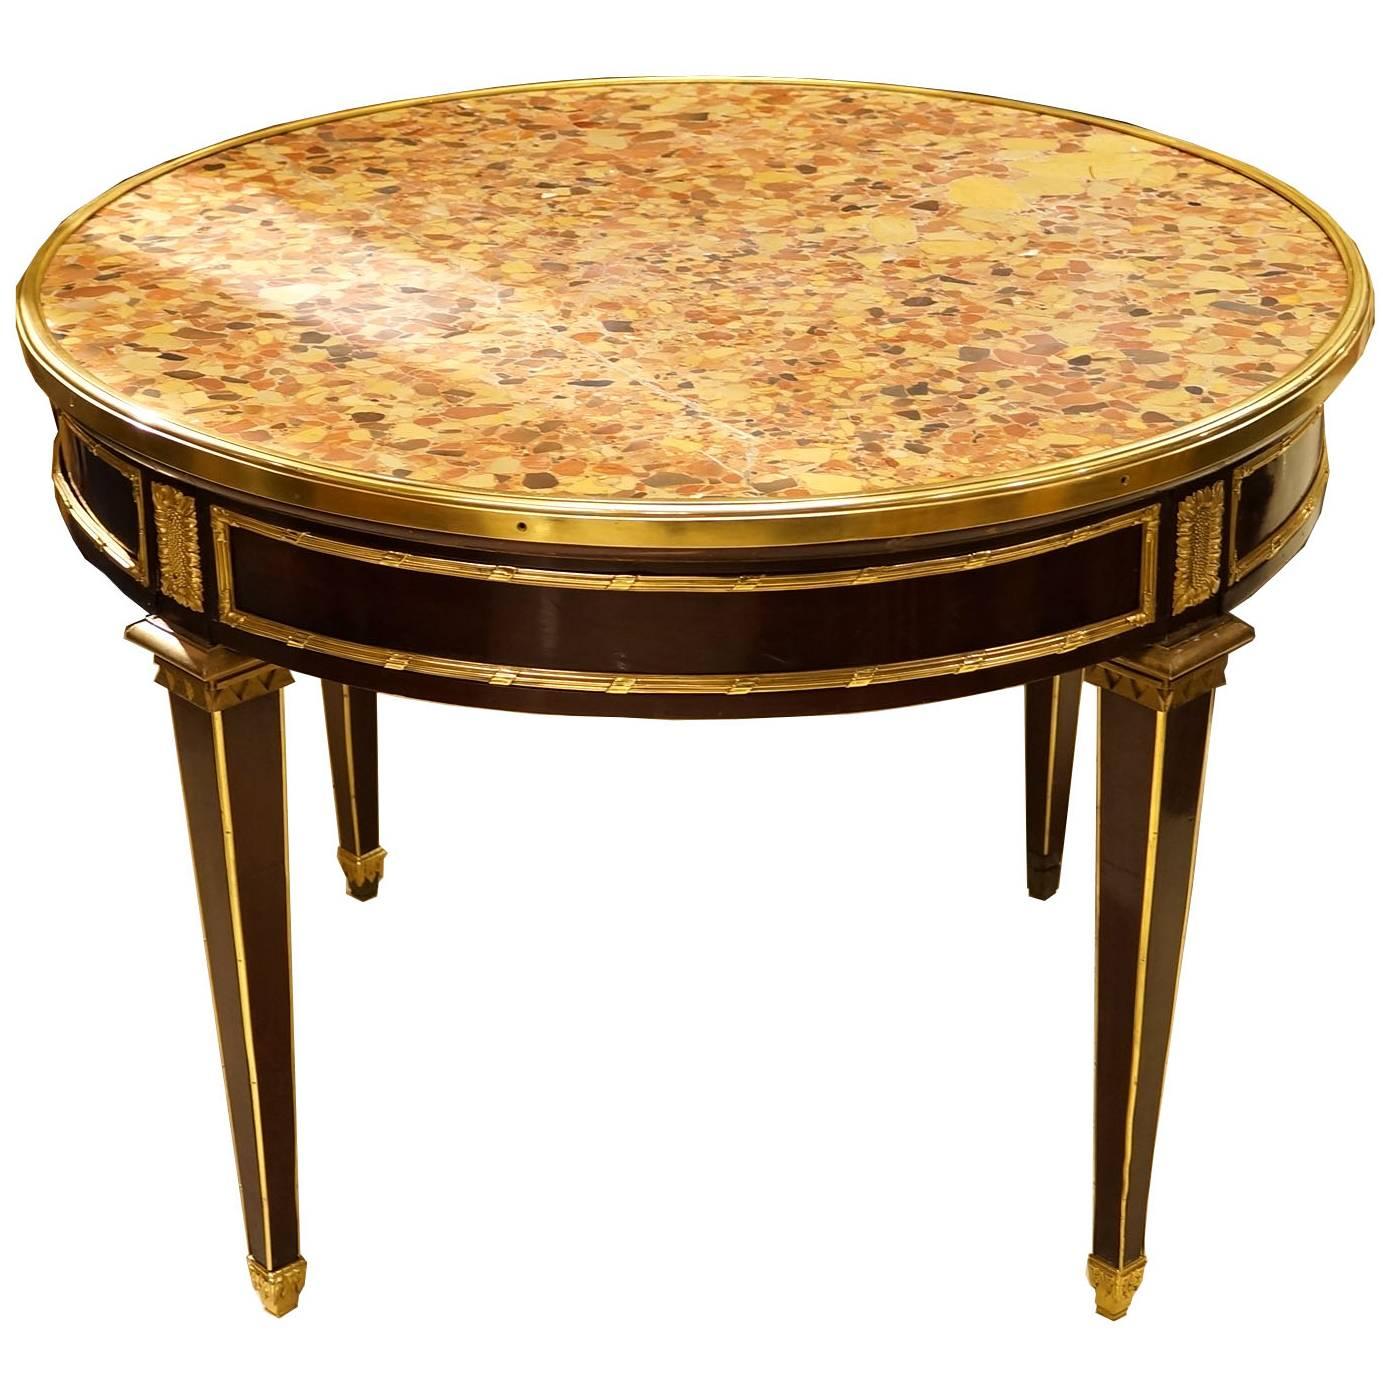 Table centrale ronde française de style Louis XVI à plateau en marbre